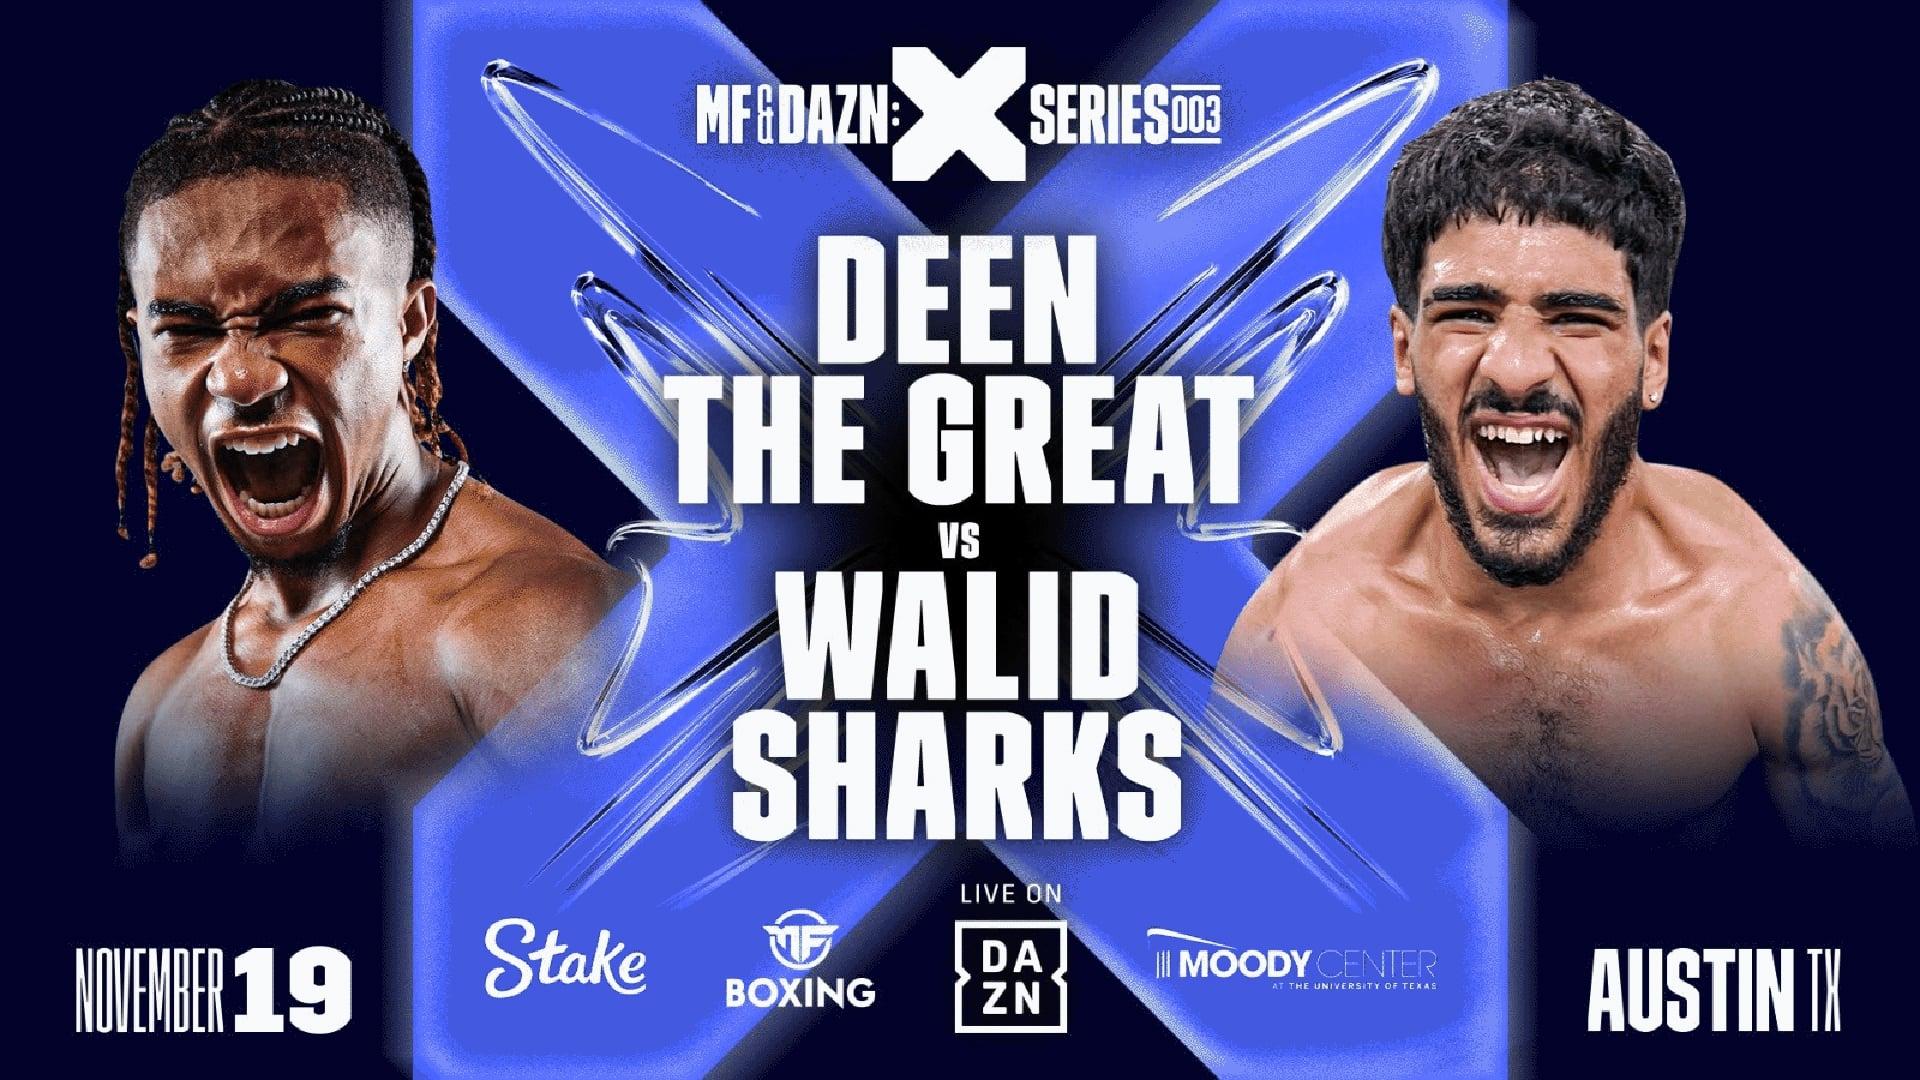 Deen The Great vs. Walid Sharks backdrop